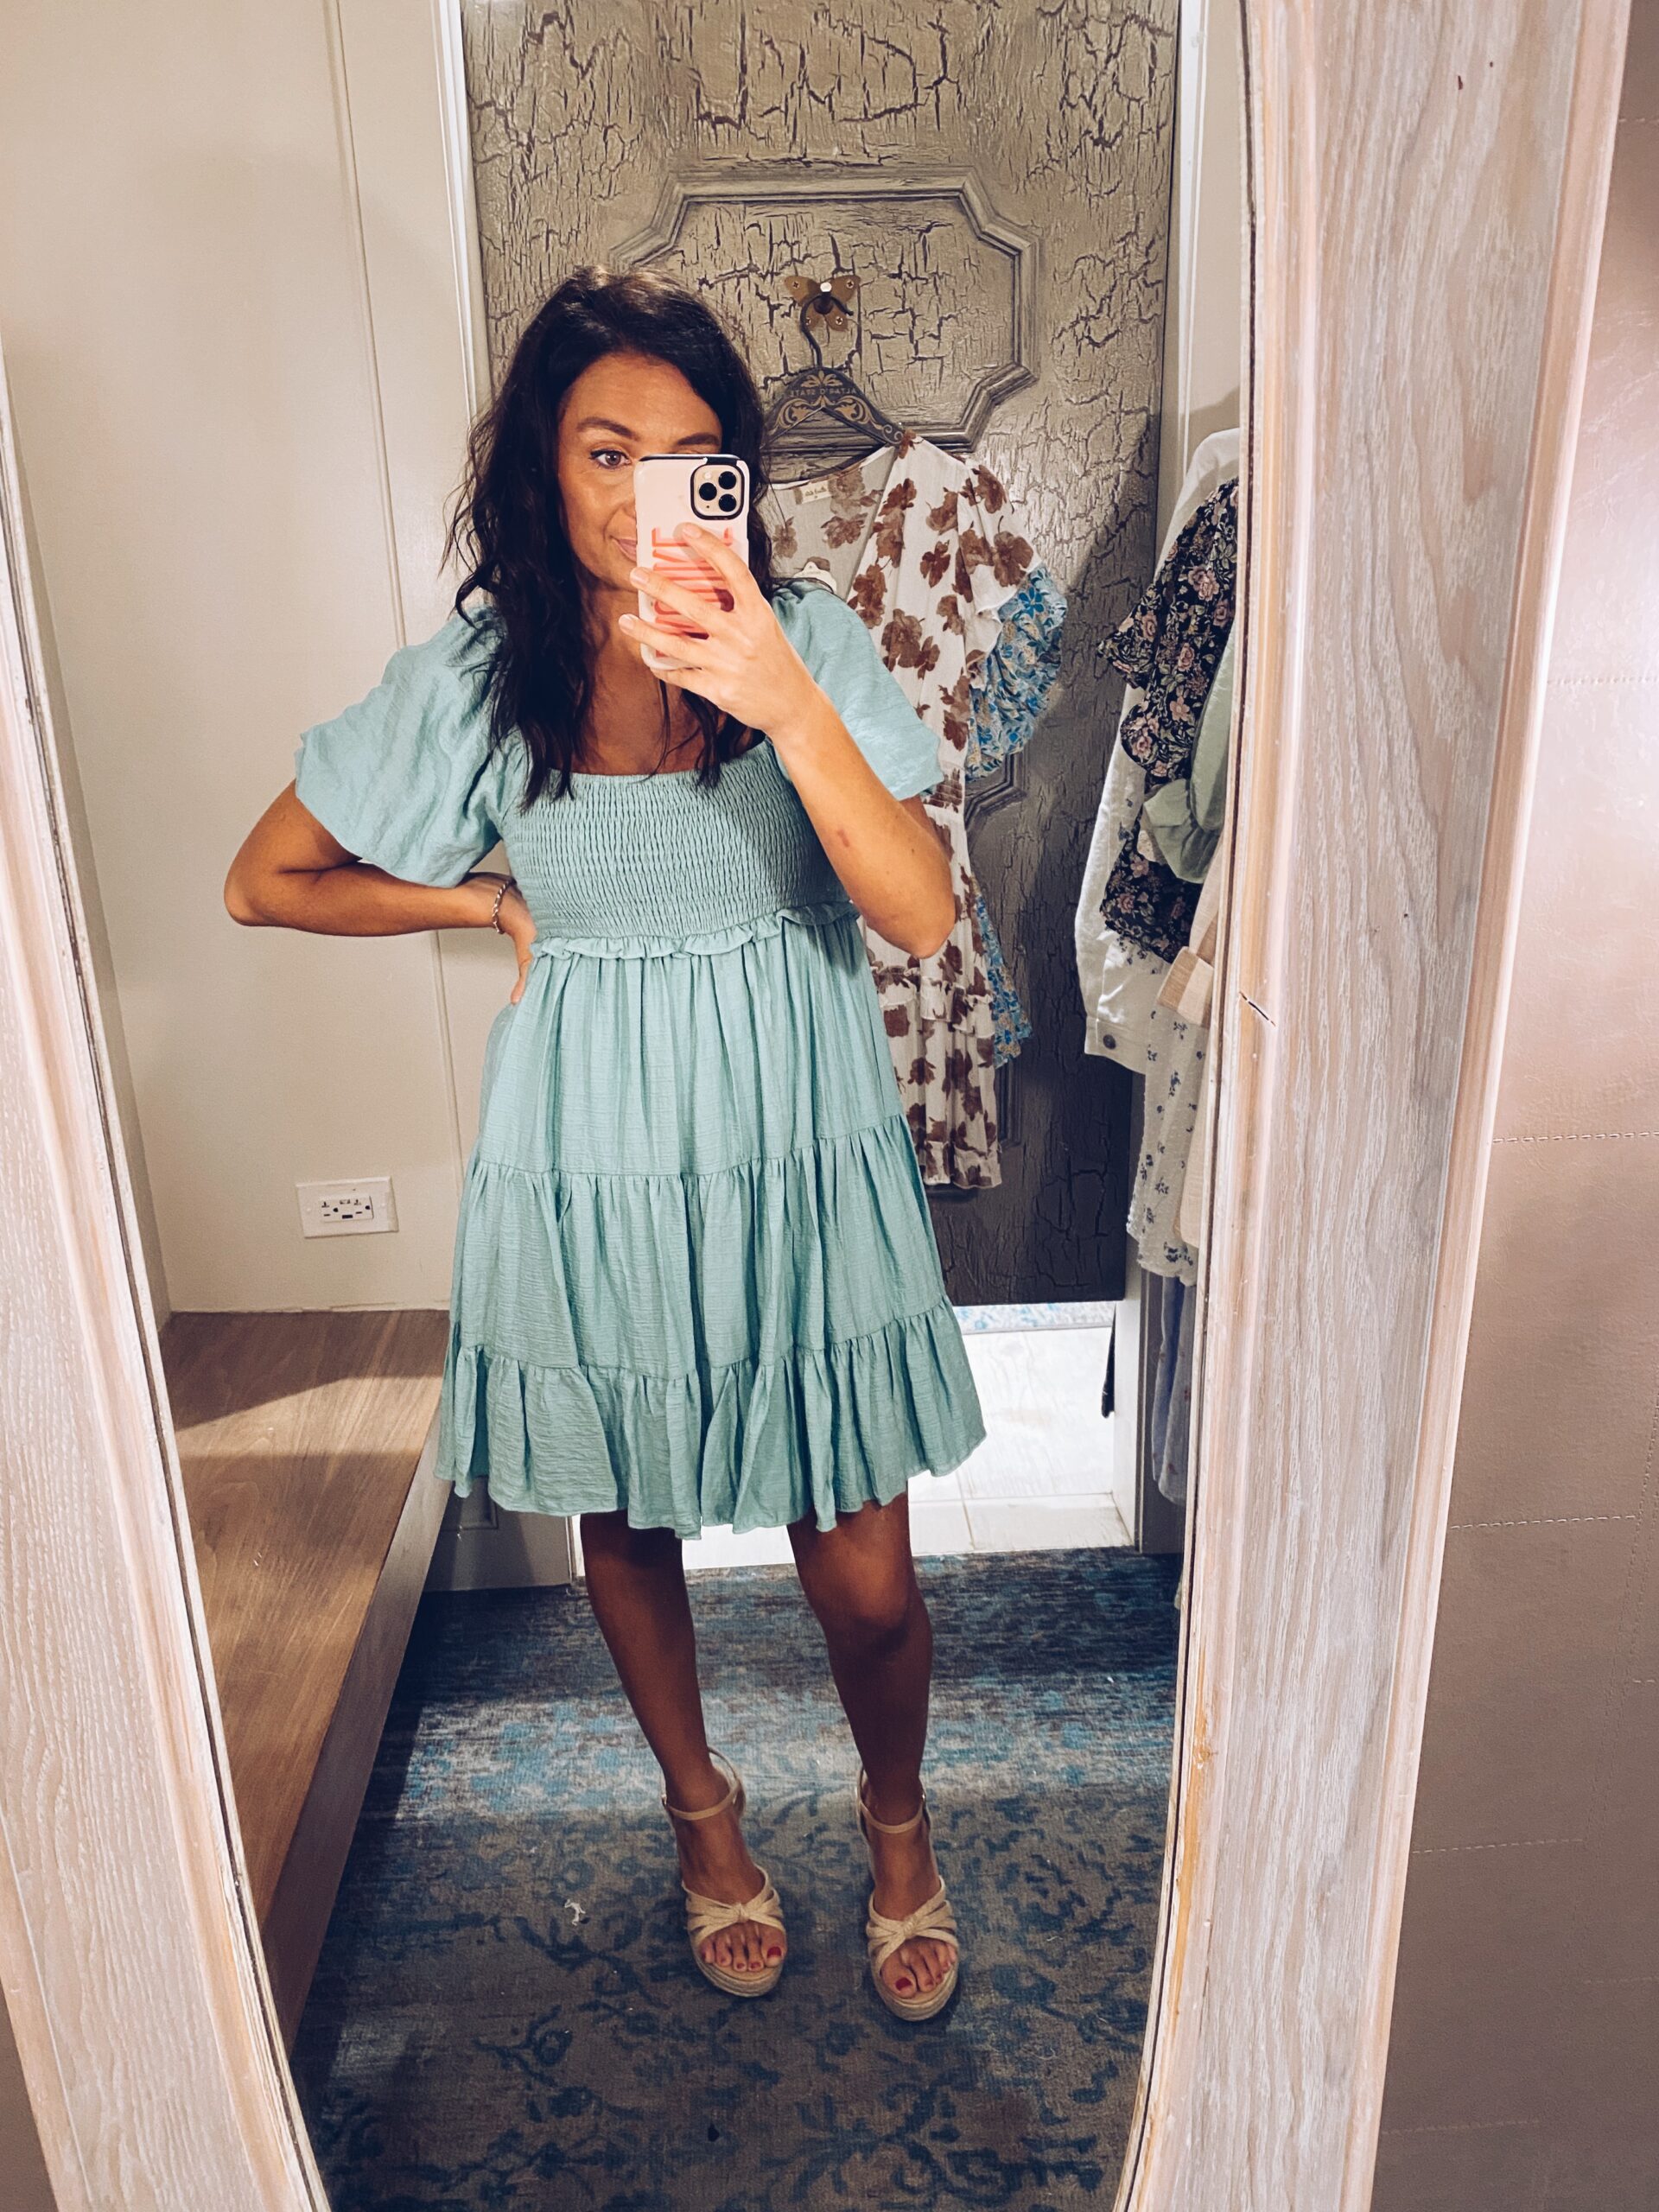 Girl posing in mirror wearing blue dress